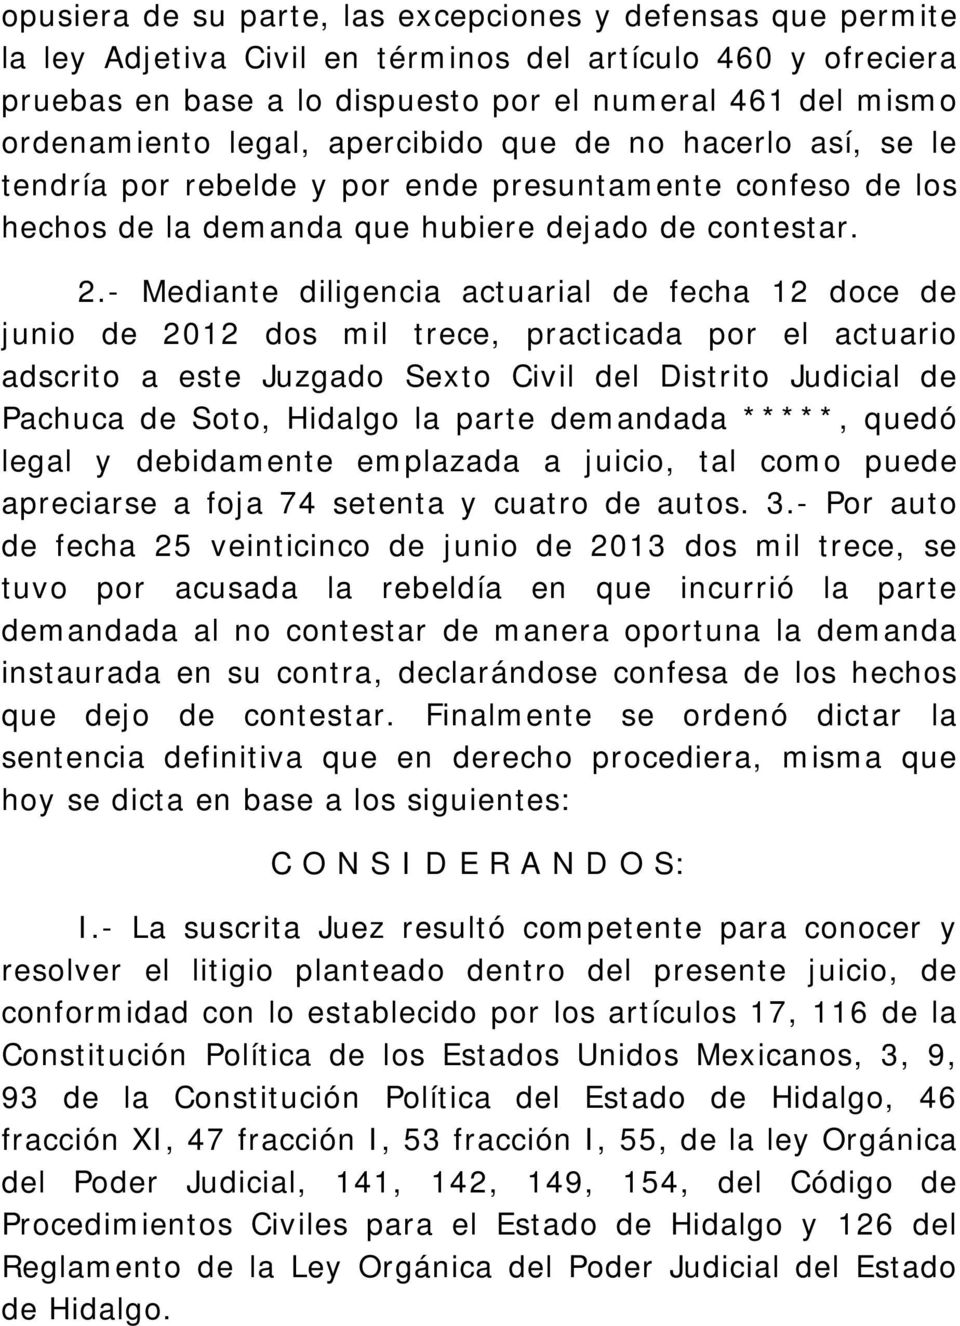 - Mediante diligencia actuarial de fecha 12 doce de junio de 2012 dos mil trece, practicada por el actuario adscrito a este Juzgado Sexto Civil del Distrito Judicial de Pachuca de Soto, Hidalgo la